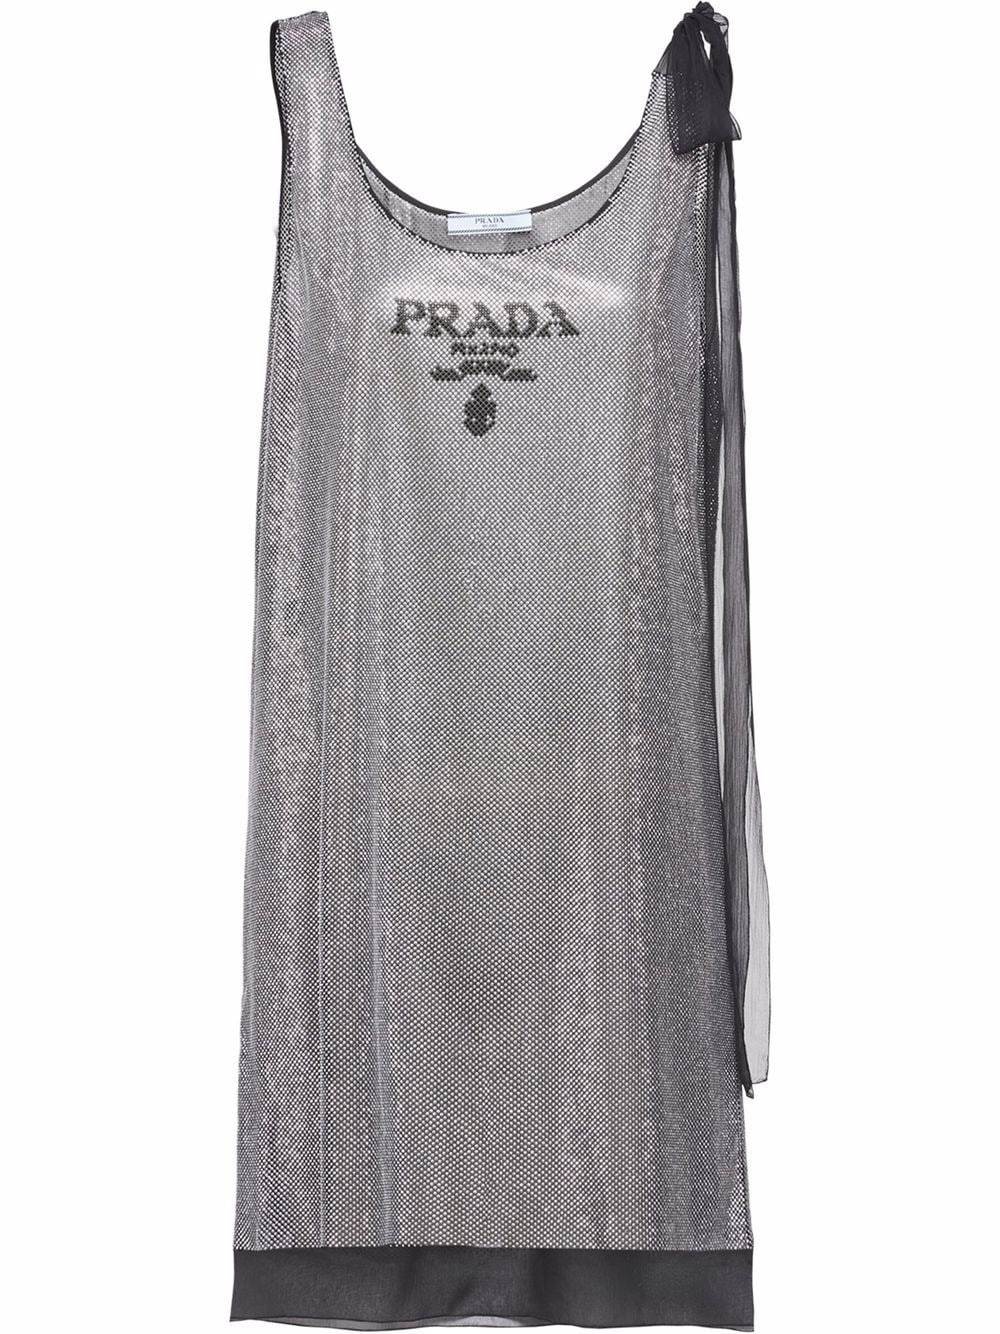 Prada crystal-embellished chiffon dress - Silver von Prada